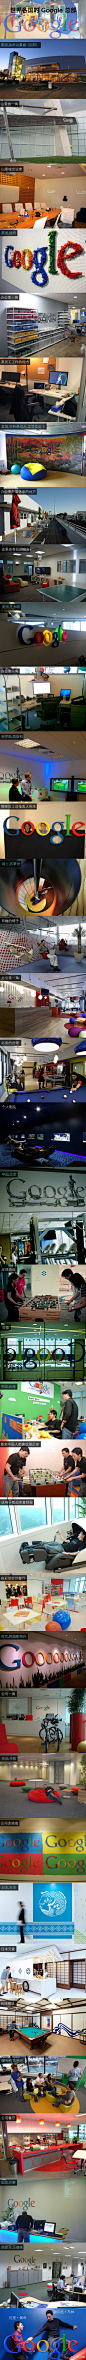 【世界各国的 Google 总部】差不多在每一年的优秀雇主排行榜中，谷歌总能名列前茅，到底这间地球上最成功的科技公司之一有着什么魔力呢？看完谷歌的办公室，你或许就会明白为什么佩奇和布林是好老板～